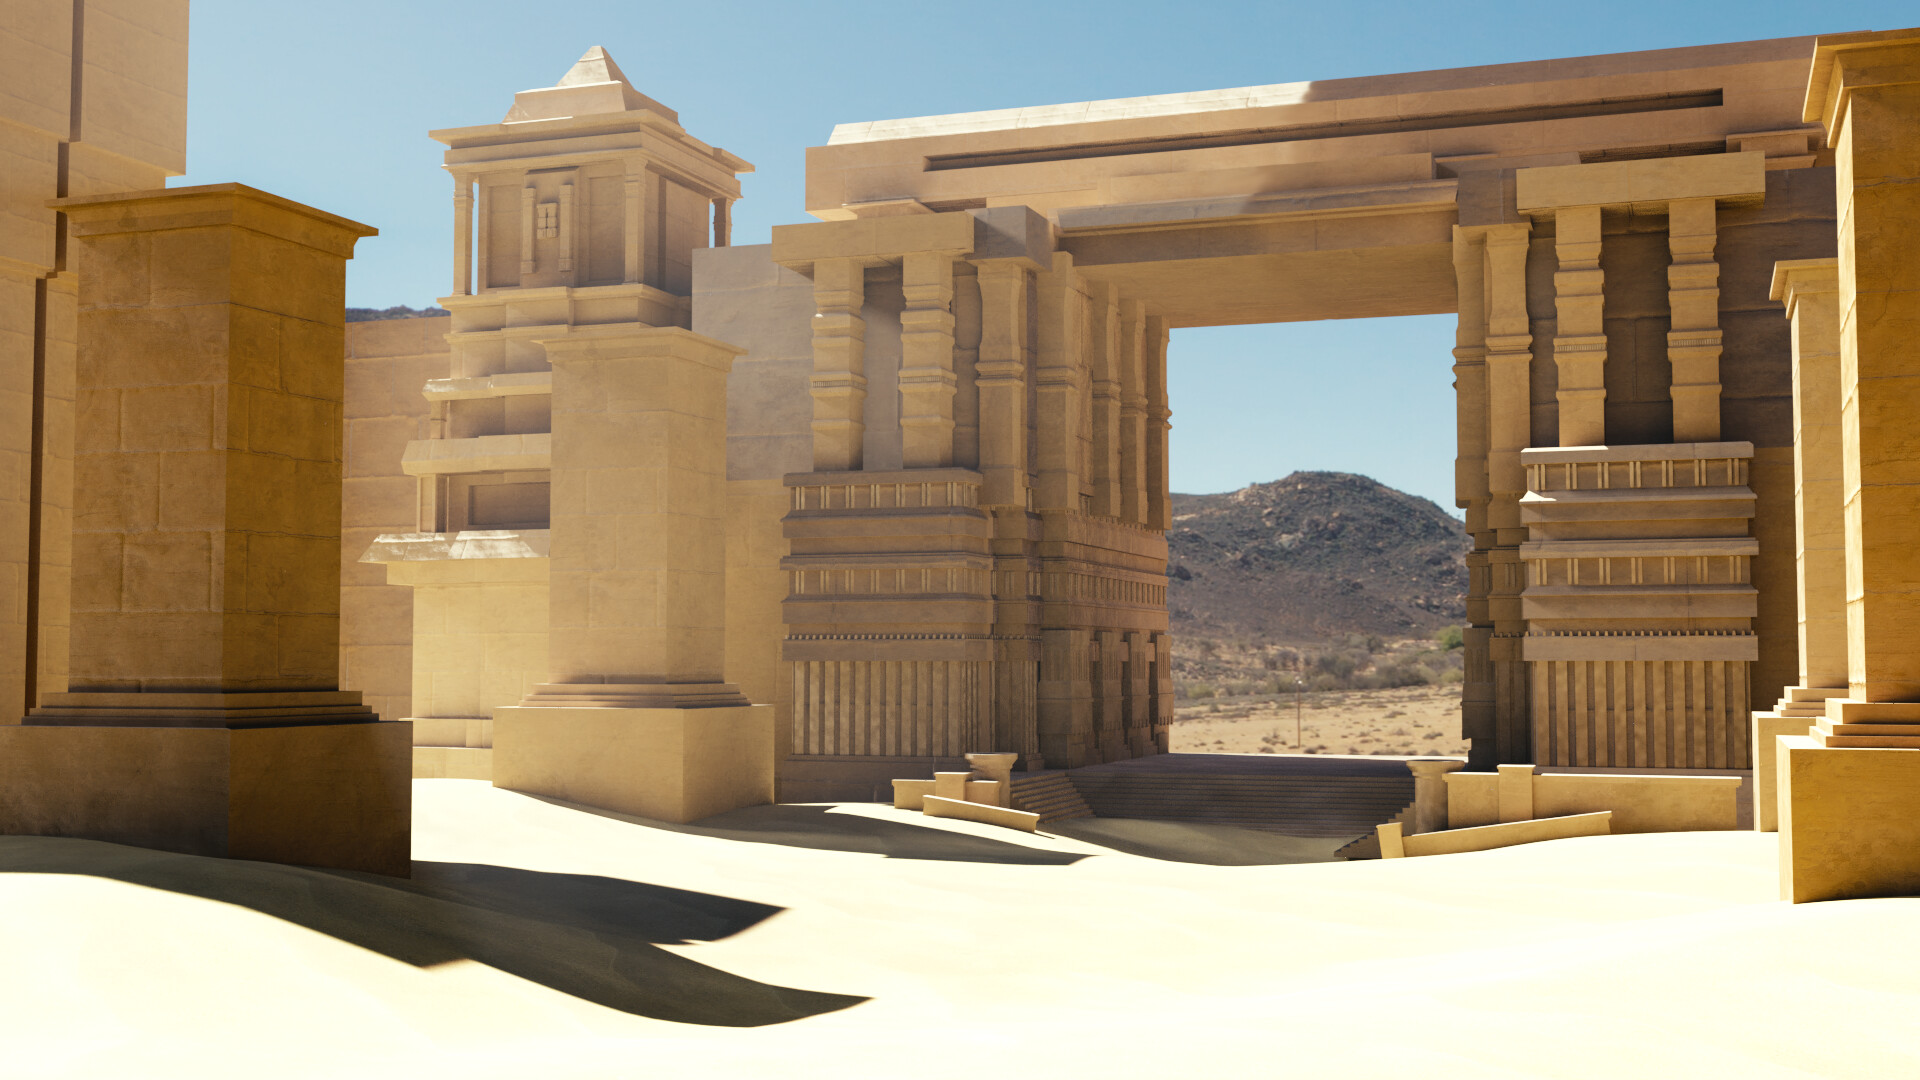 Yung desert temples. Пустынный храм в майнкрафт. Храм в пустыне. Храм в пустыне майнкрафт. Храм в пустыне из песка.